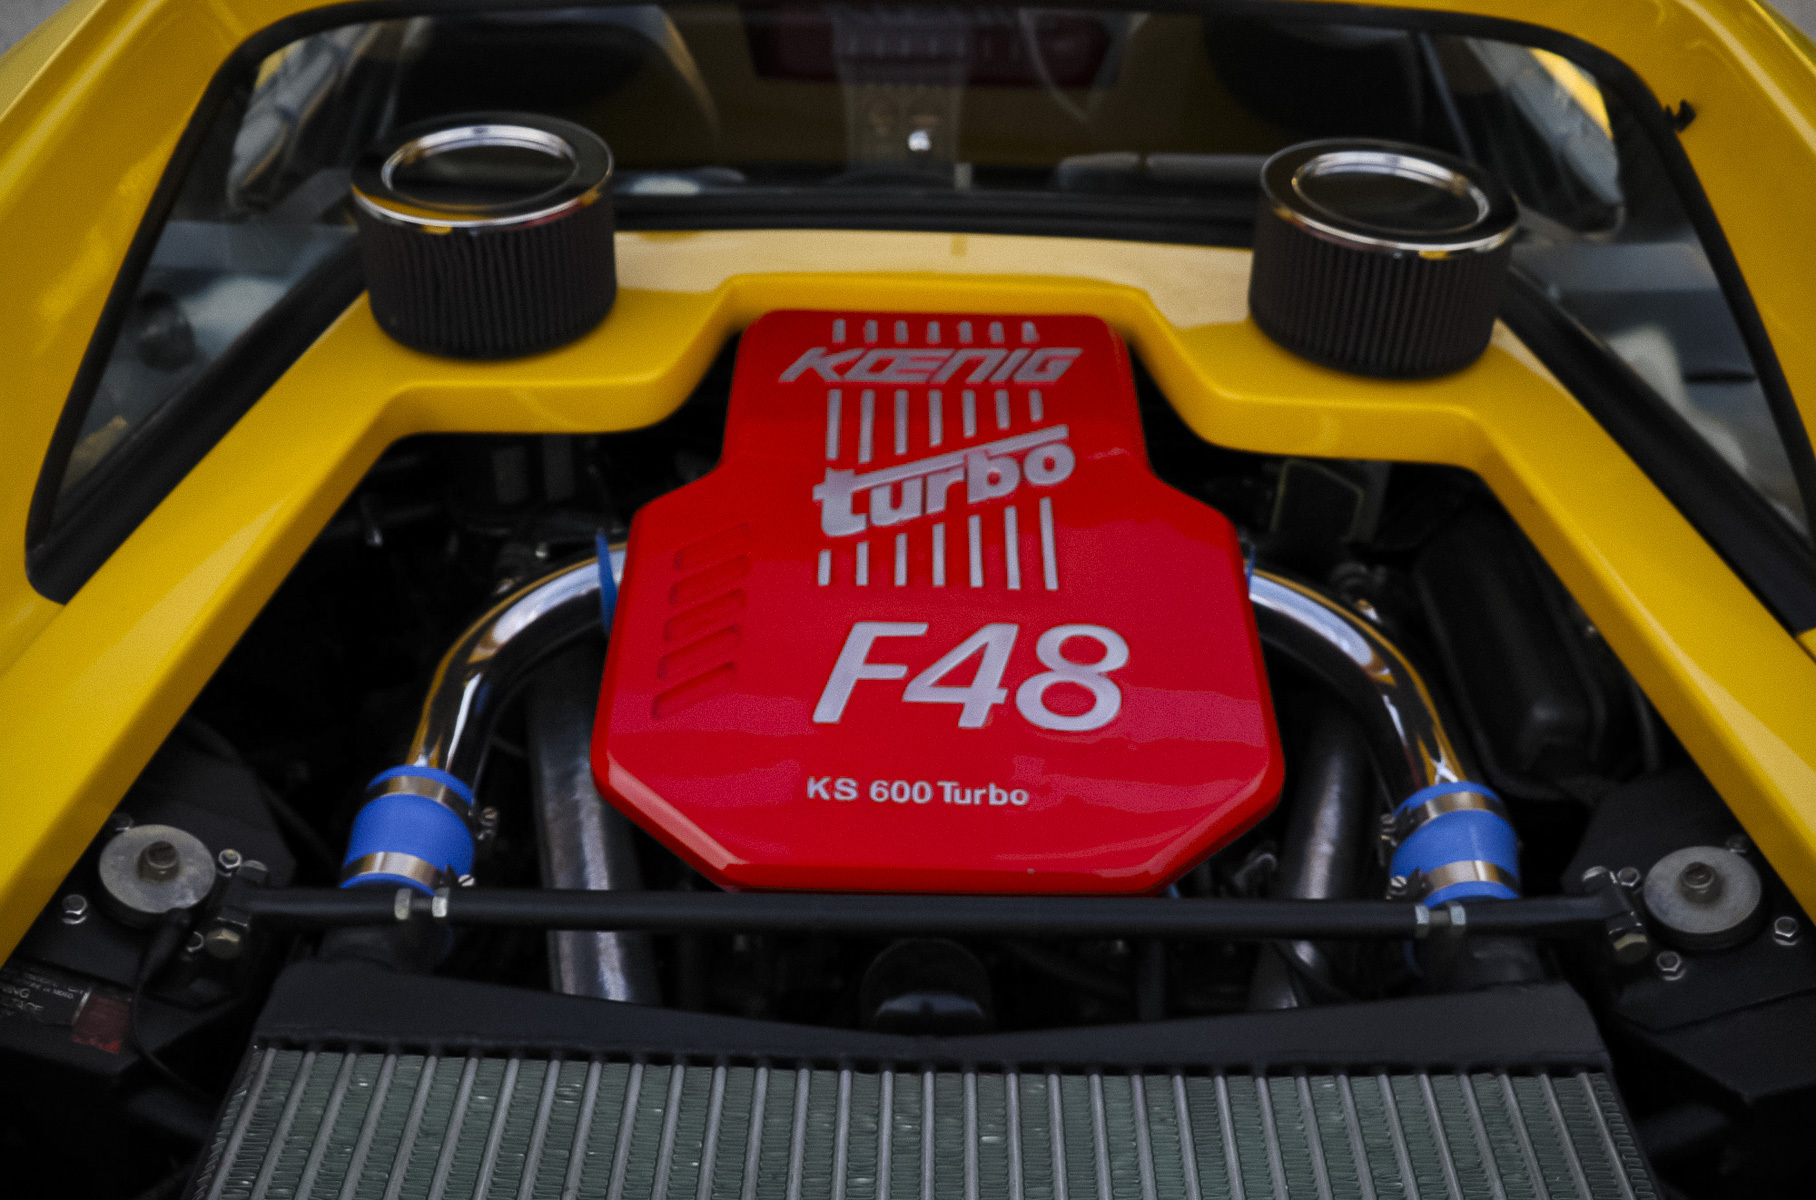 Один из двух редчайших Ferrari выставили на торги по цене нового Toyota Land Cruiser